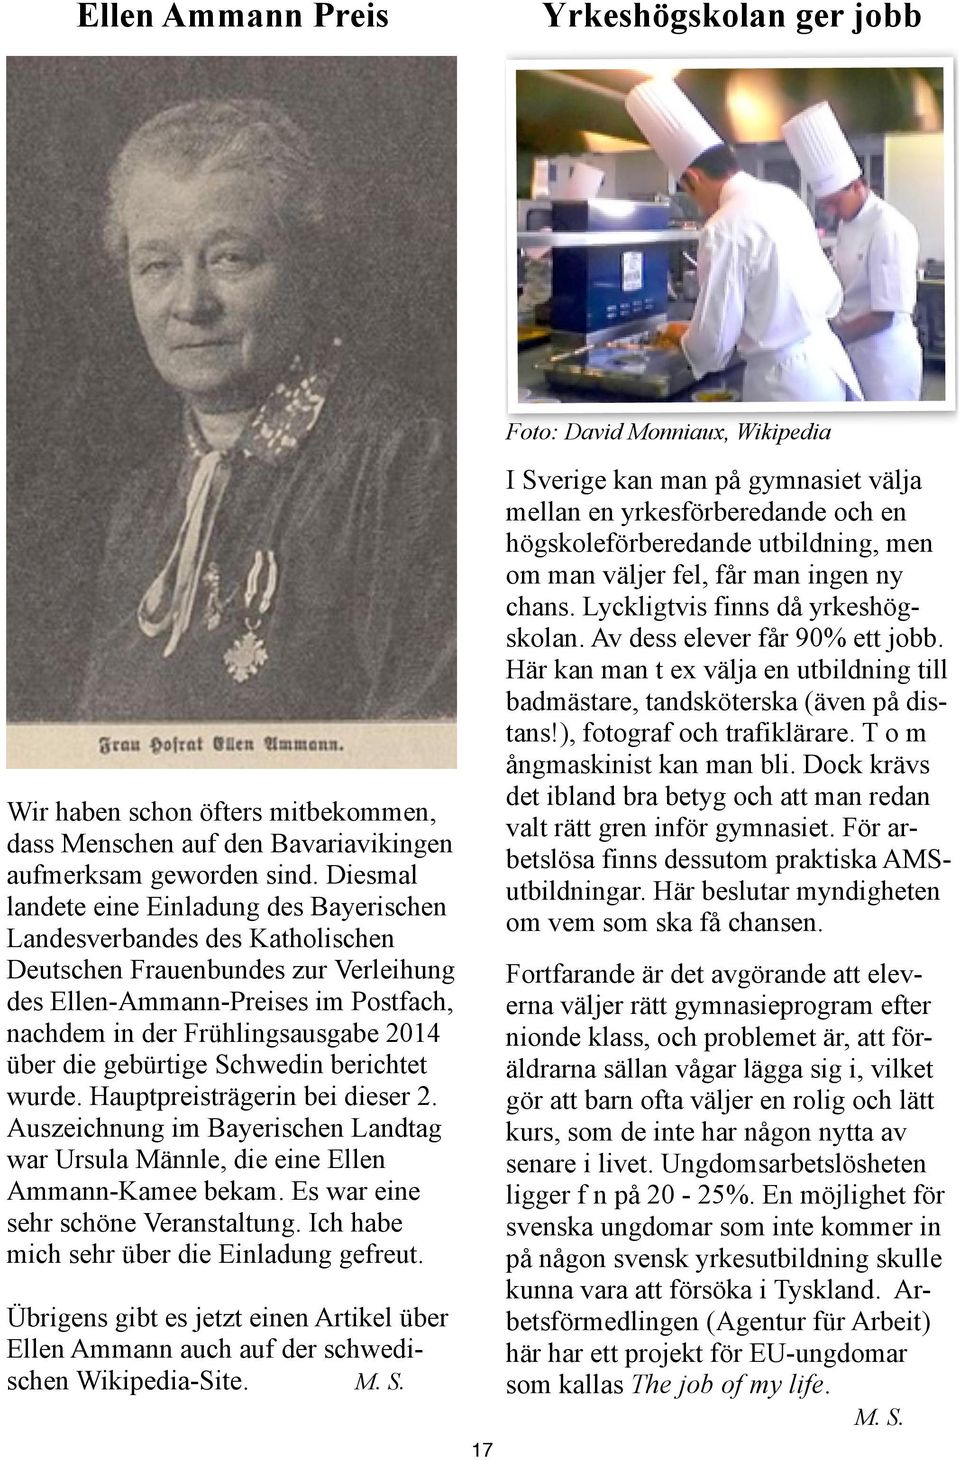 die gebürtige Schwedin berichtet wurde. Hauptpreisträgerin bei dieser 2. Auszeichnung im Bayerischen Landtag war Ursula Männle, die eine Ellen Ammann-Kamee bekam.